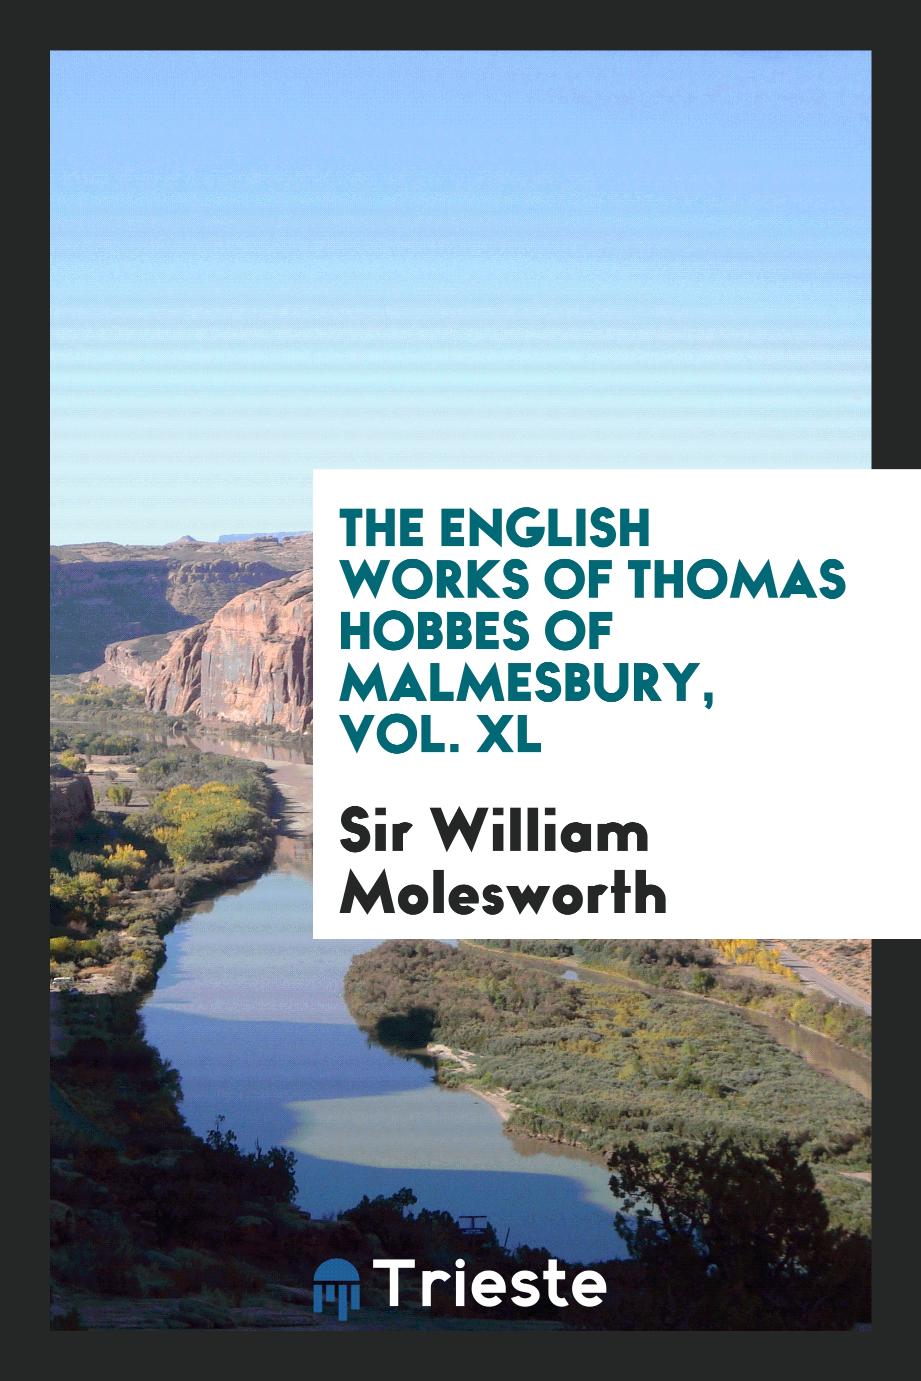 The English Works of Thomas Hobbes of Malmesbury, Vol. XL